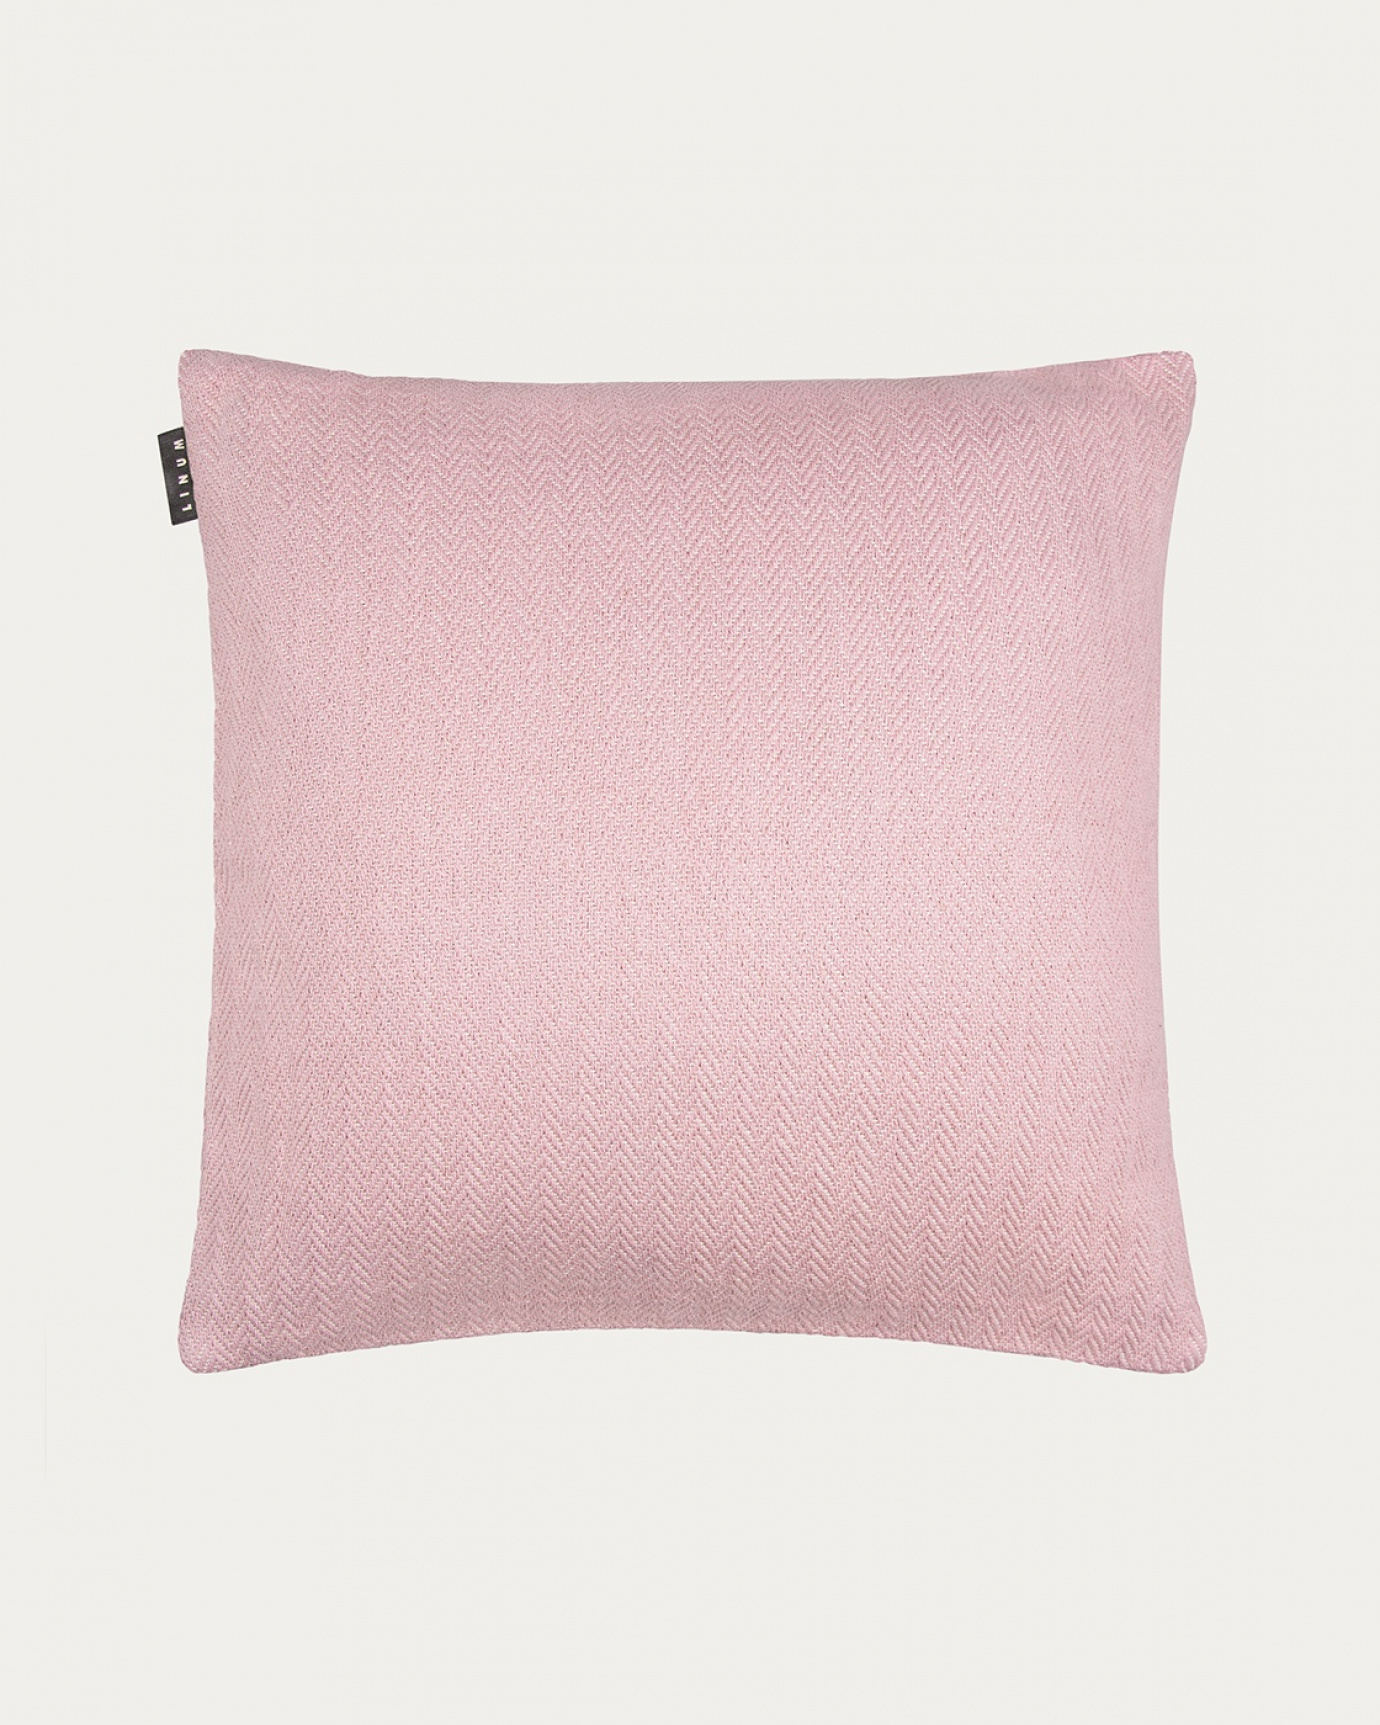 Image du produit housse de coussin SHEPARD rose poudré en coton doux avec un motif à chevrons discret de LINUM DESIGN. Taille 50 x 50 cm.